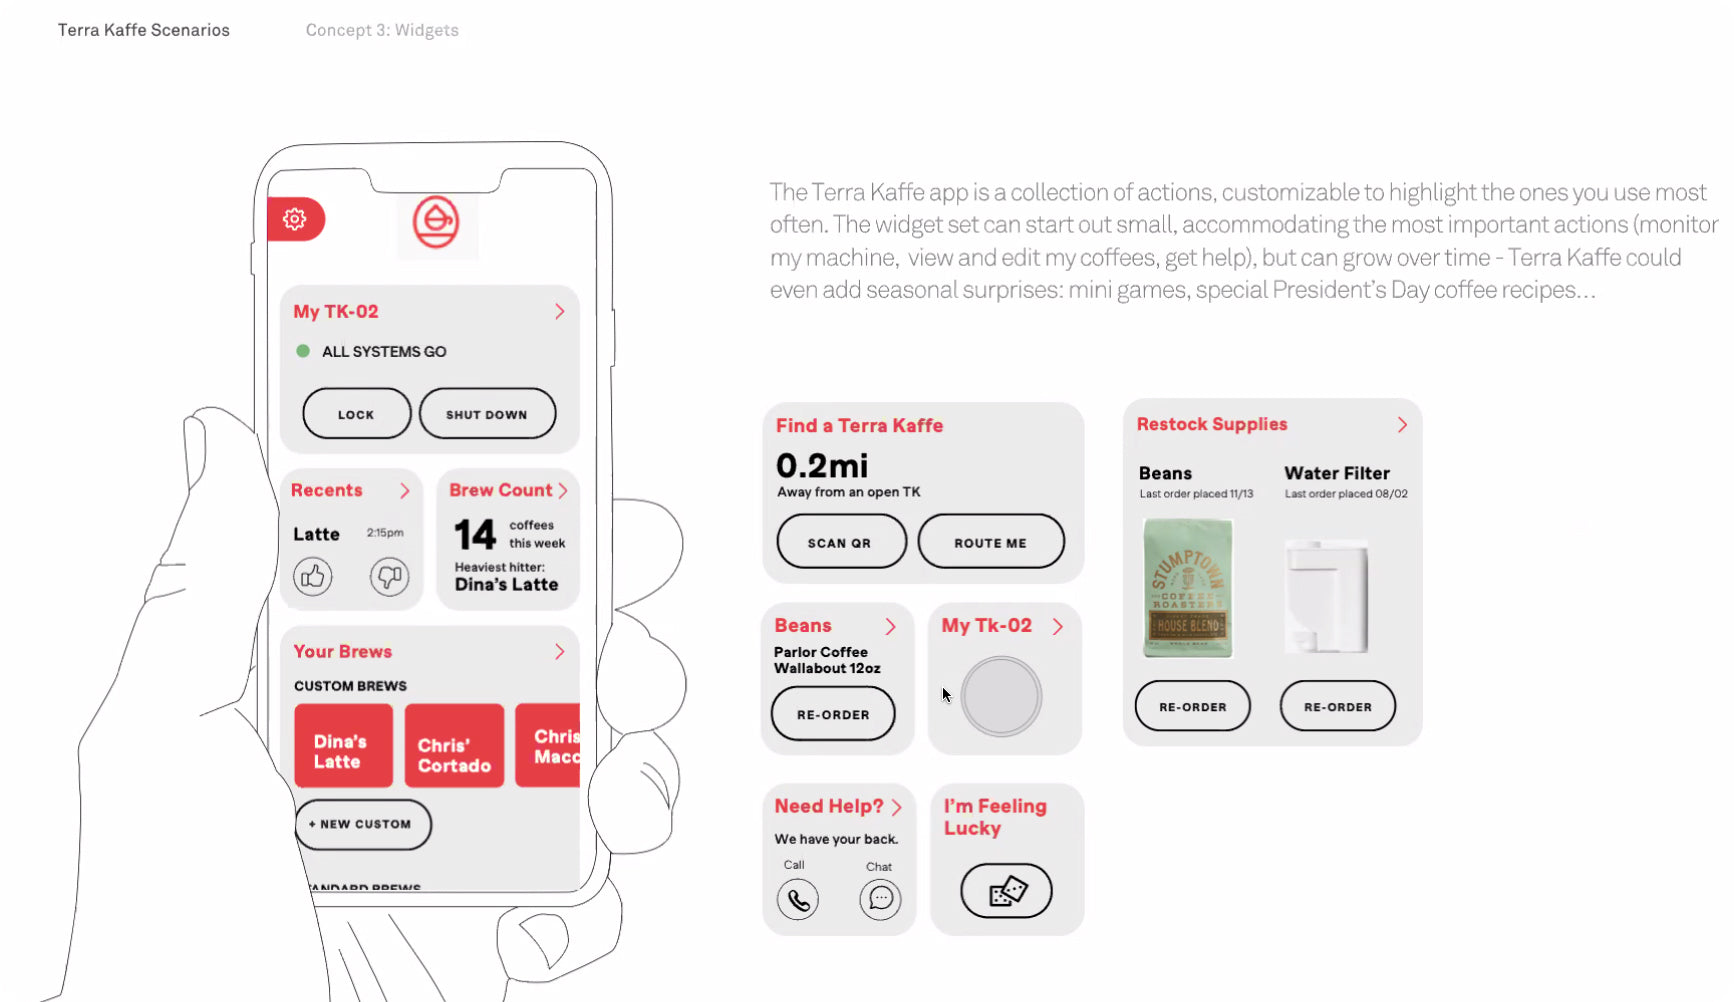 Terra Kaffe | Mock up designs of early TK-02 app screens